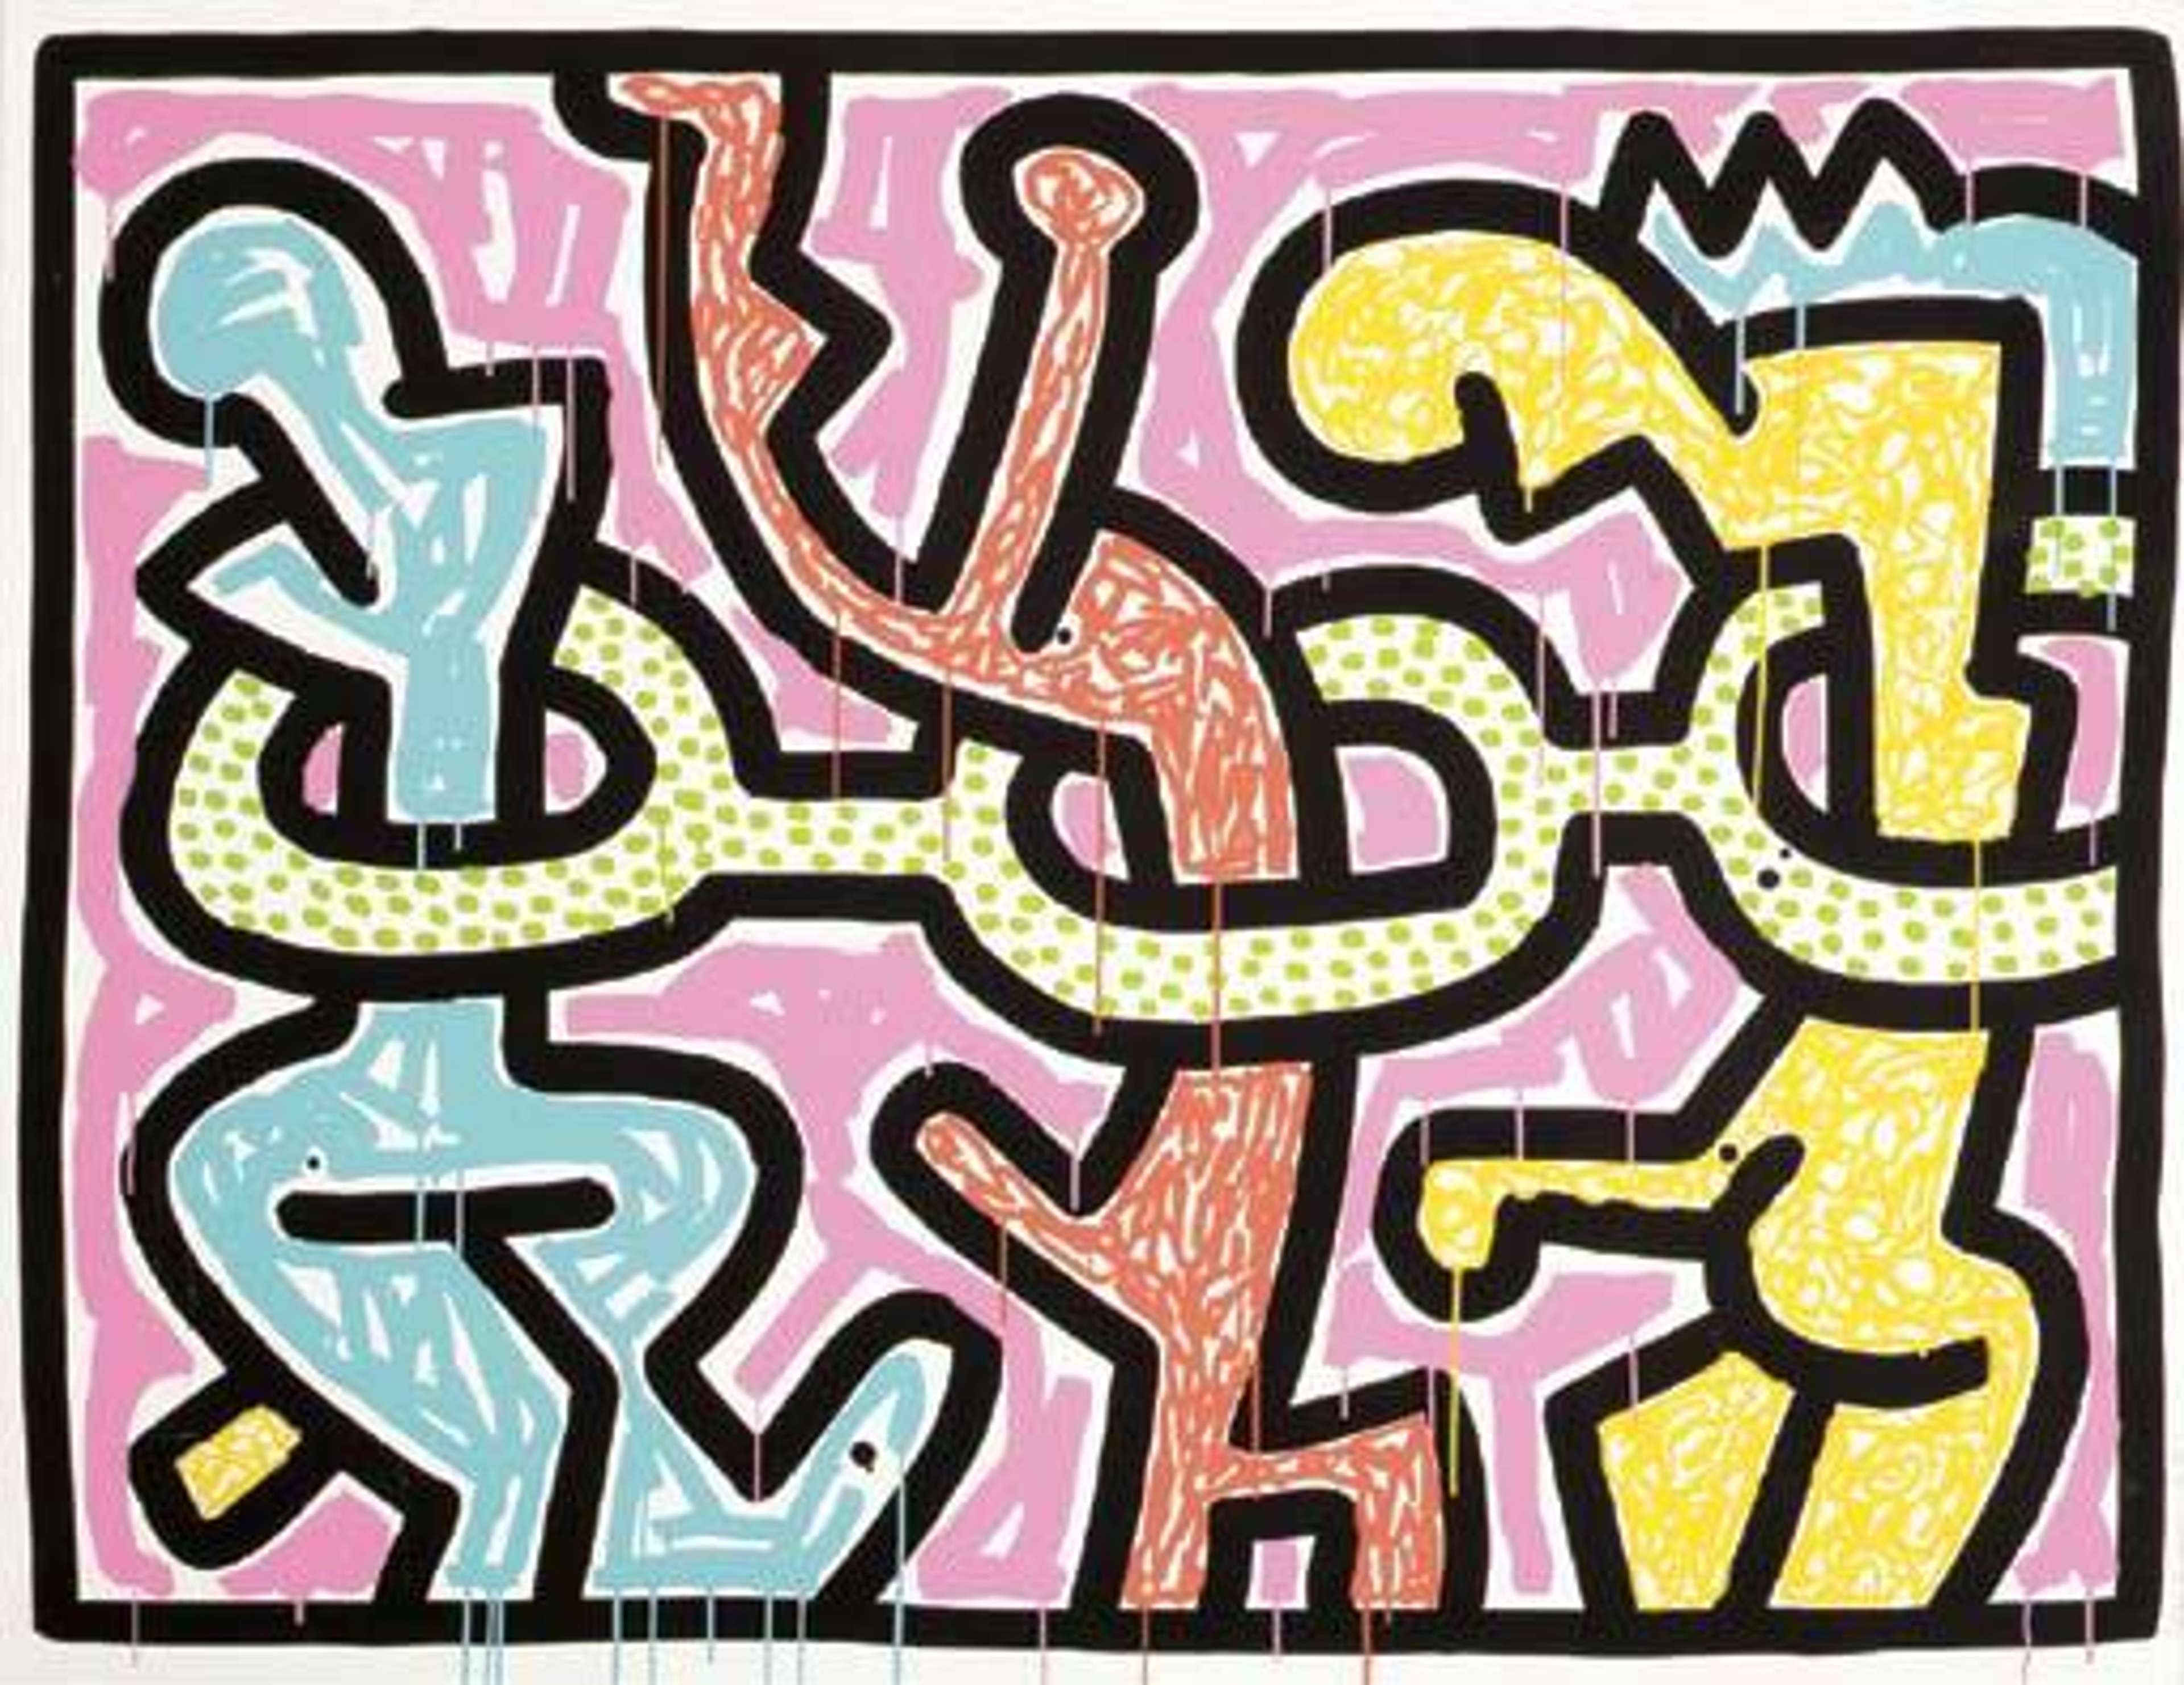 Flowers II - Signed Print by Keith Haring 1990 - MyArtBroker